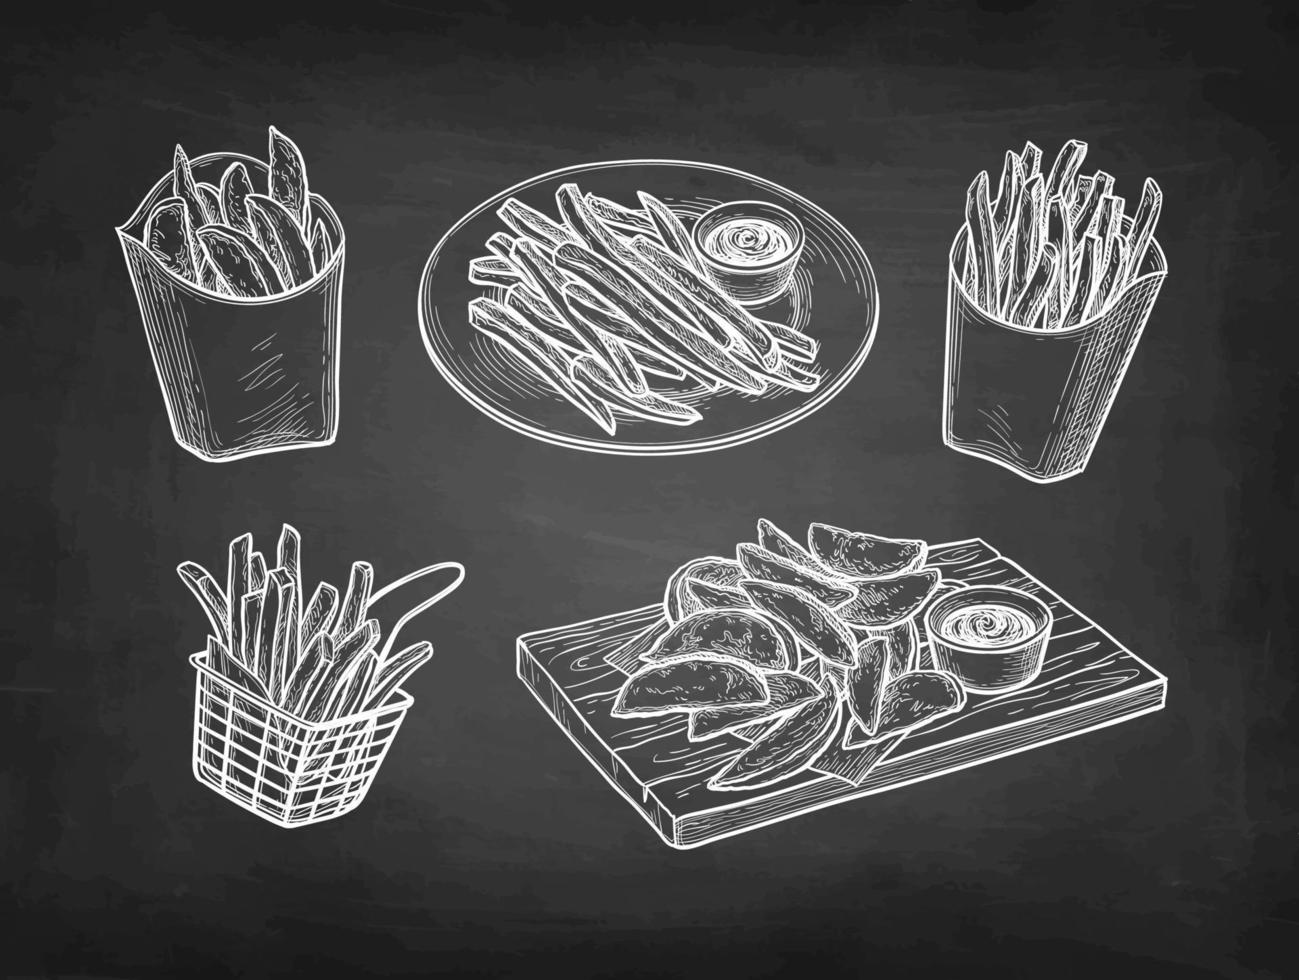 patata porciones y francés papas fritas tiza bosquejo en pizarra antecedentes. mano dibujado vector ilustración. retro estilo.